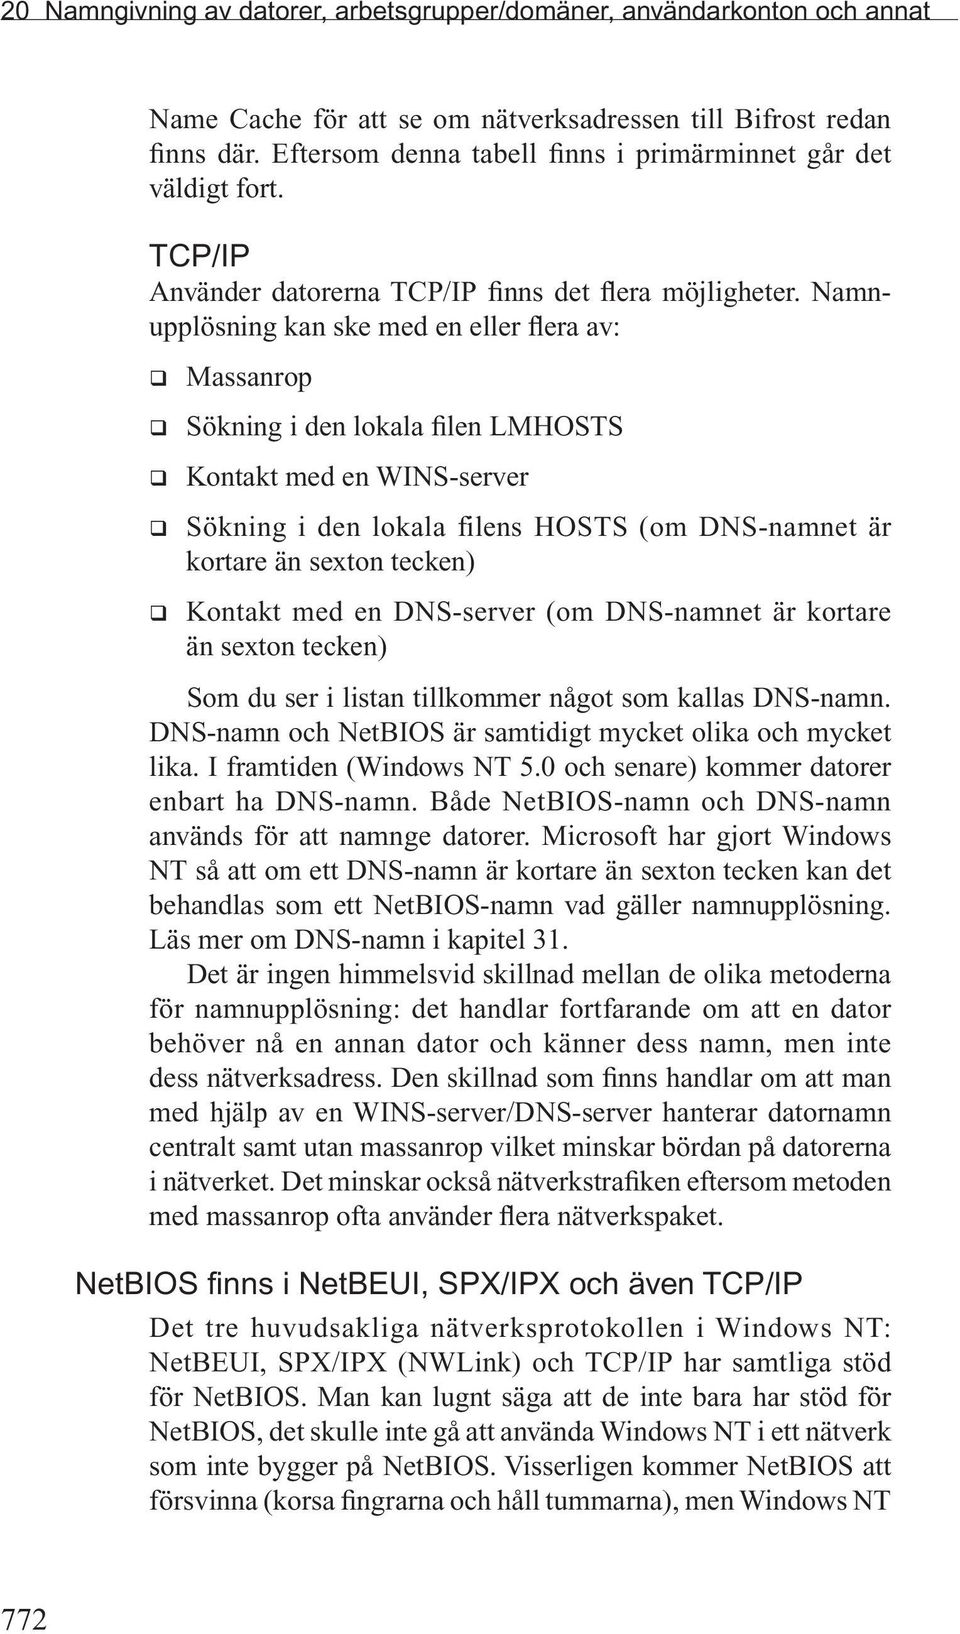 Namnupplösning kan ske med en eller flera av: Massanrop Sökning i den lokala filen LMHOSTS Kontakt med en WINS-server Sökning i den lokala filens HOSTS (om DNS-namnet är kortare än sexton tecken)